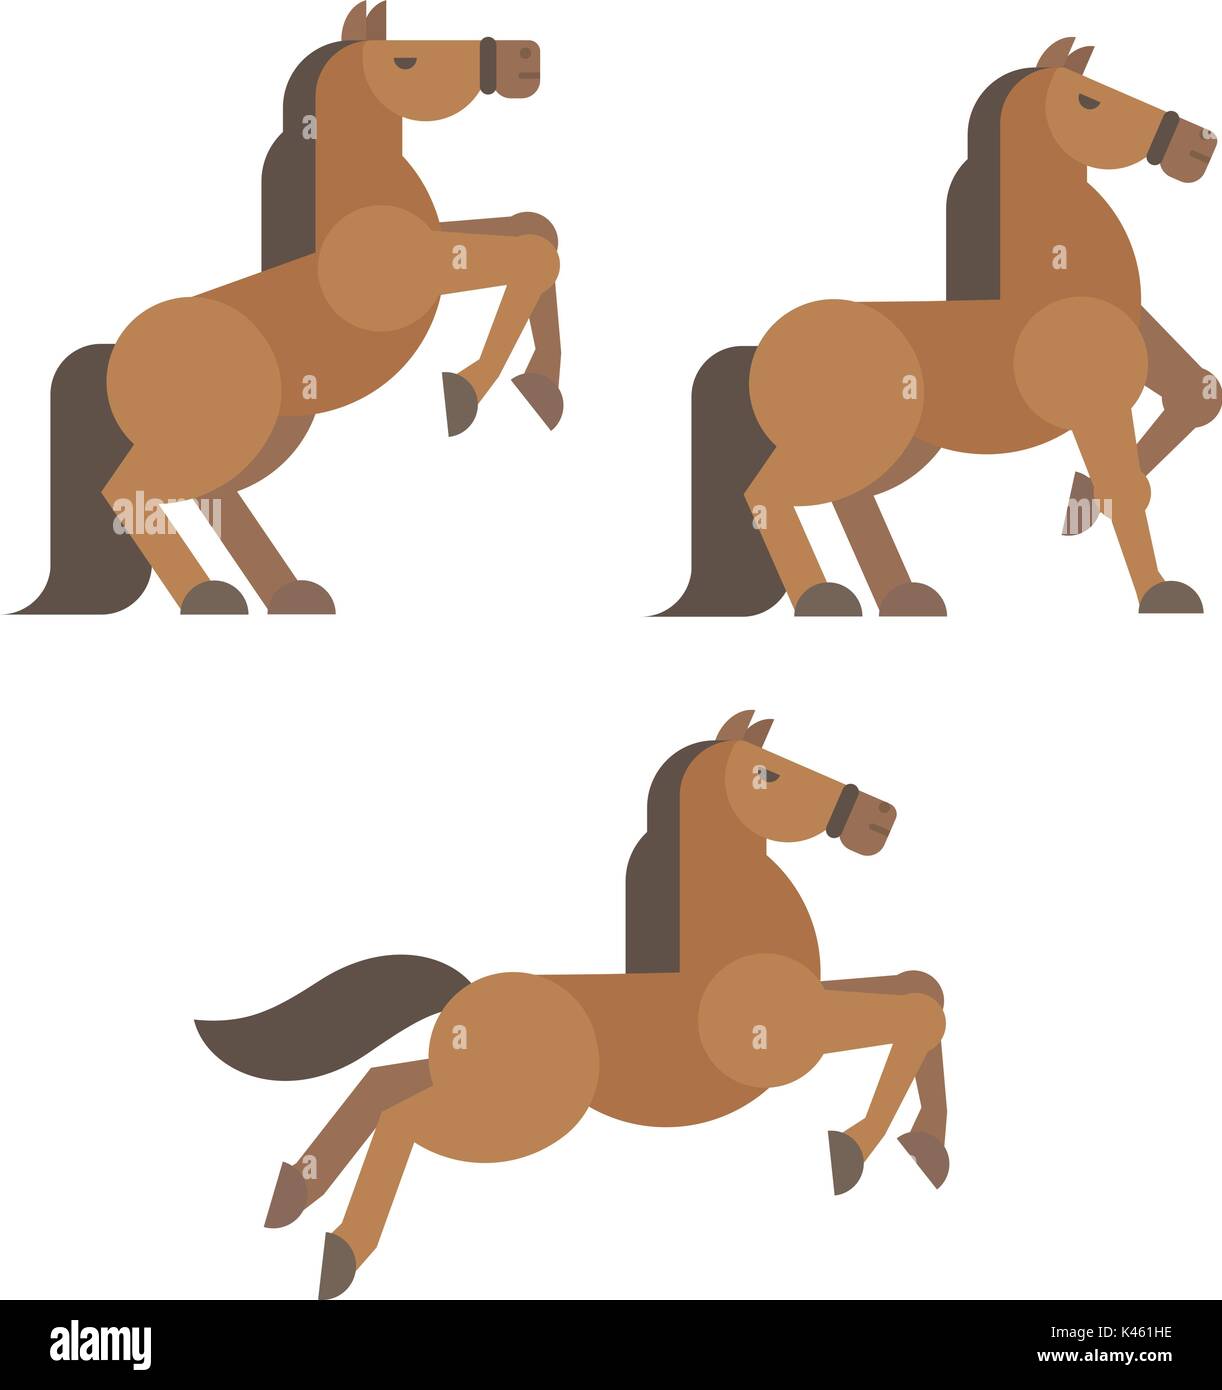 L'illustration présente une télévision. Brown cheval cabré, debout, tournant pose Illustration de Vecteur